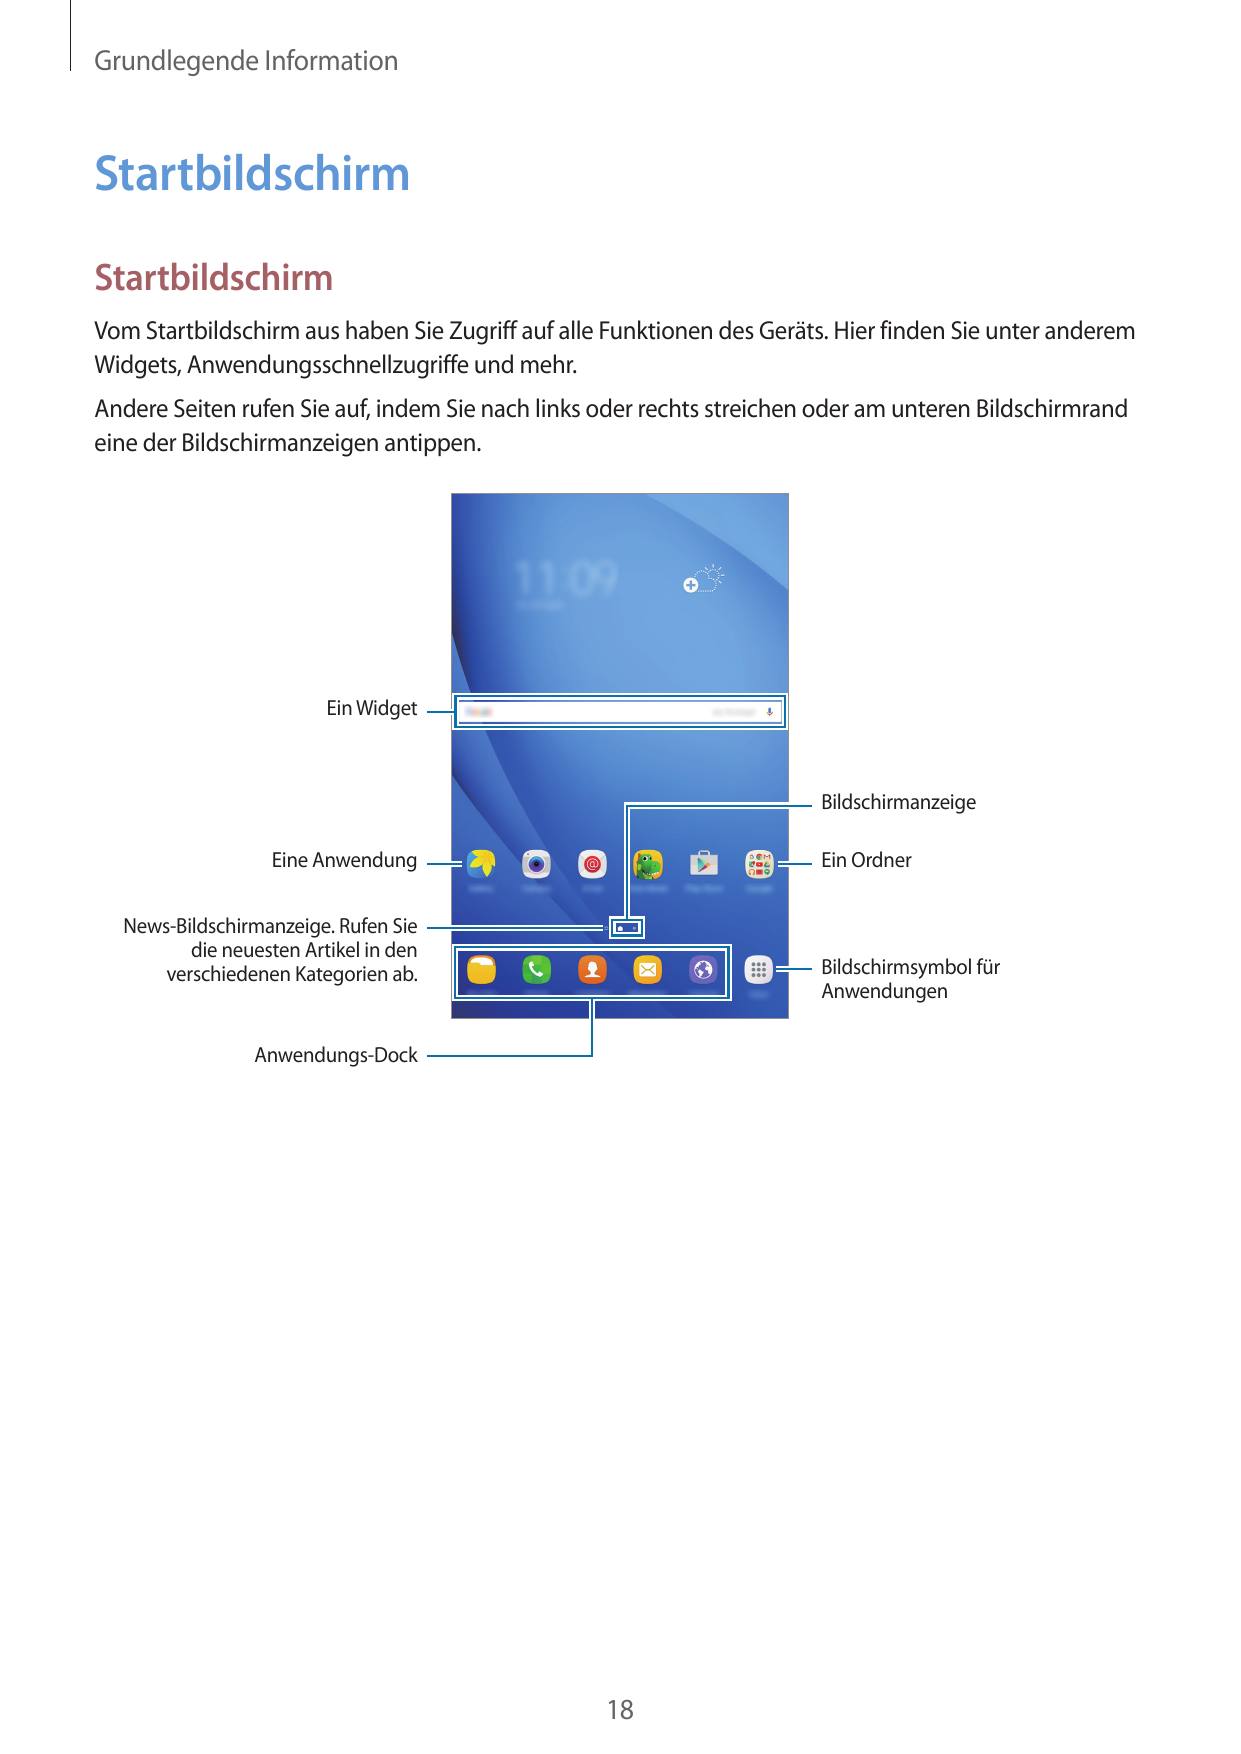 Grundlegende InformationStartbildschirmStartbildschirmVom Startbildschirm aus haben Sie Zugriff auf alle Funktionen des Geräts. 